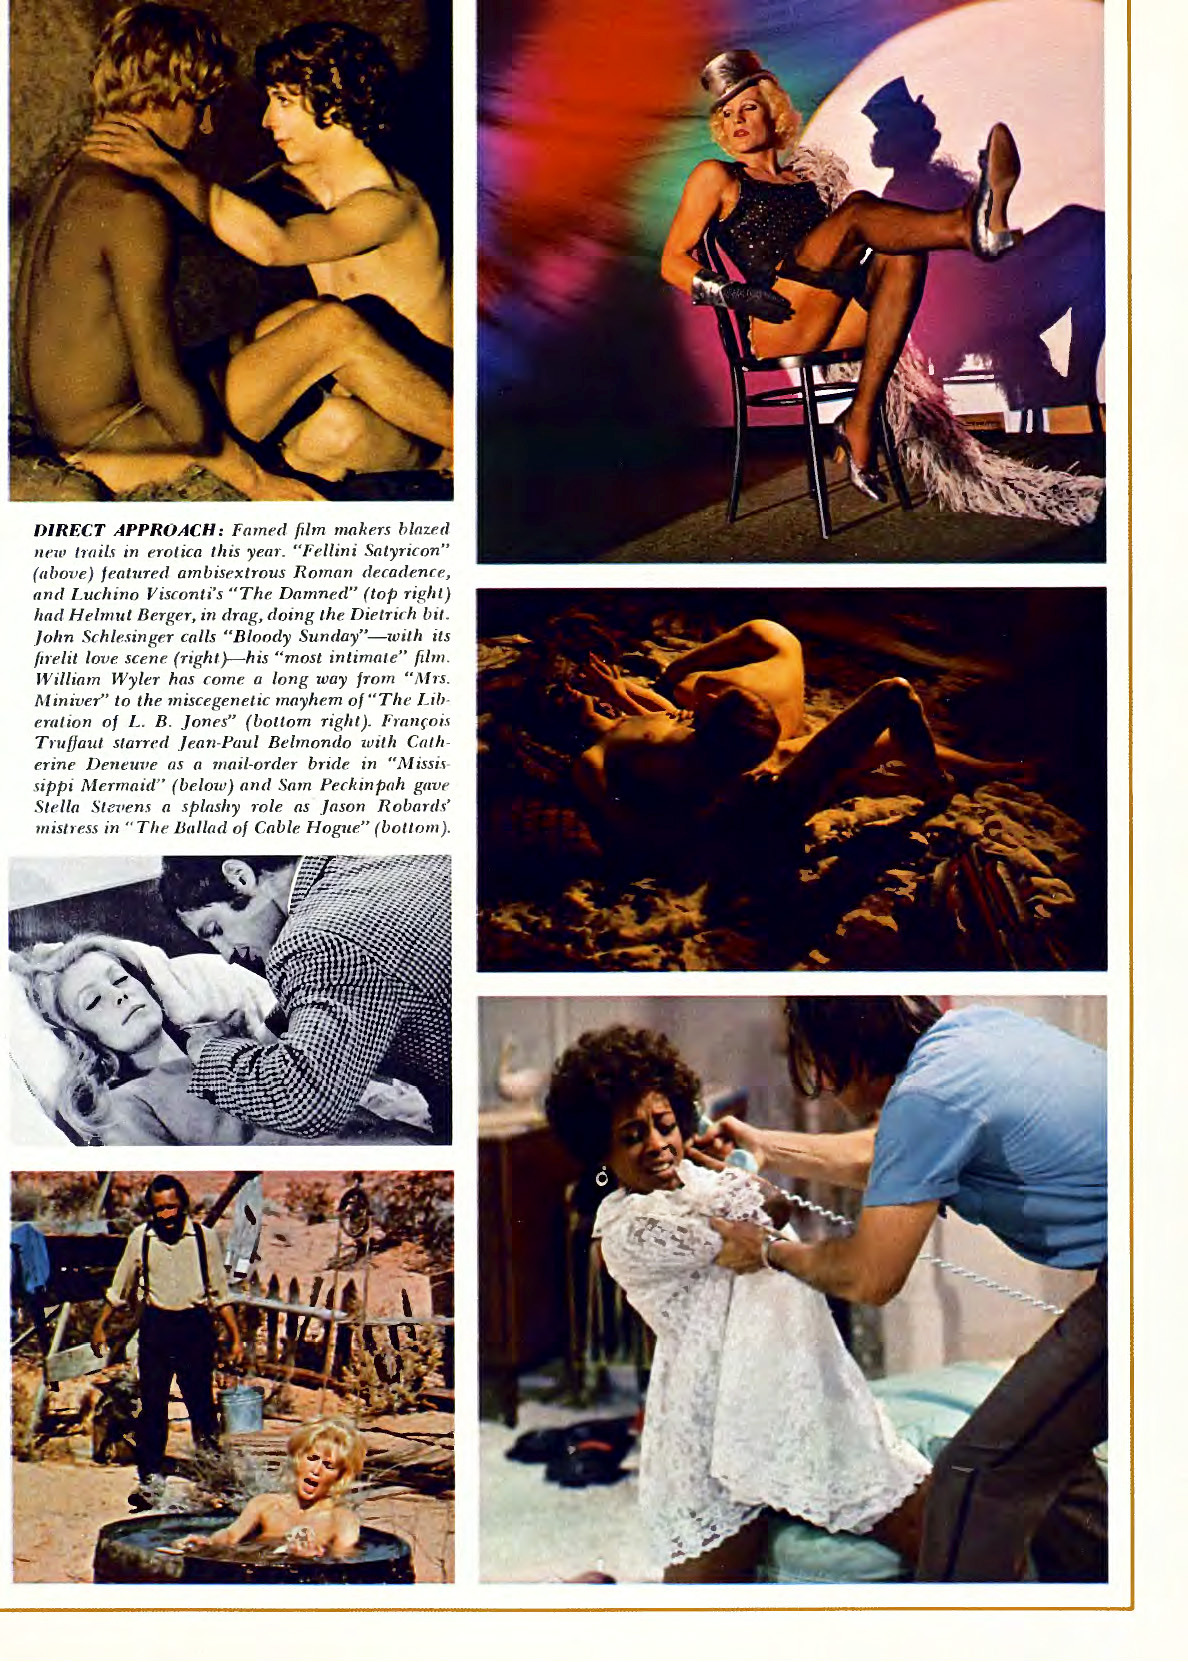 Sex in Cinema 1970